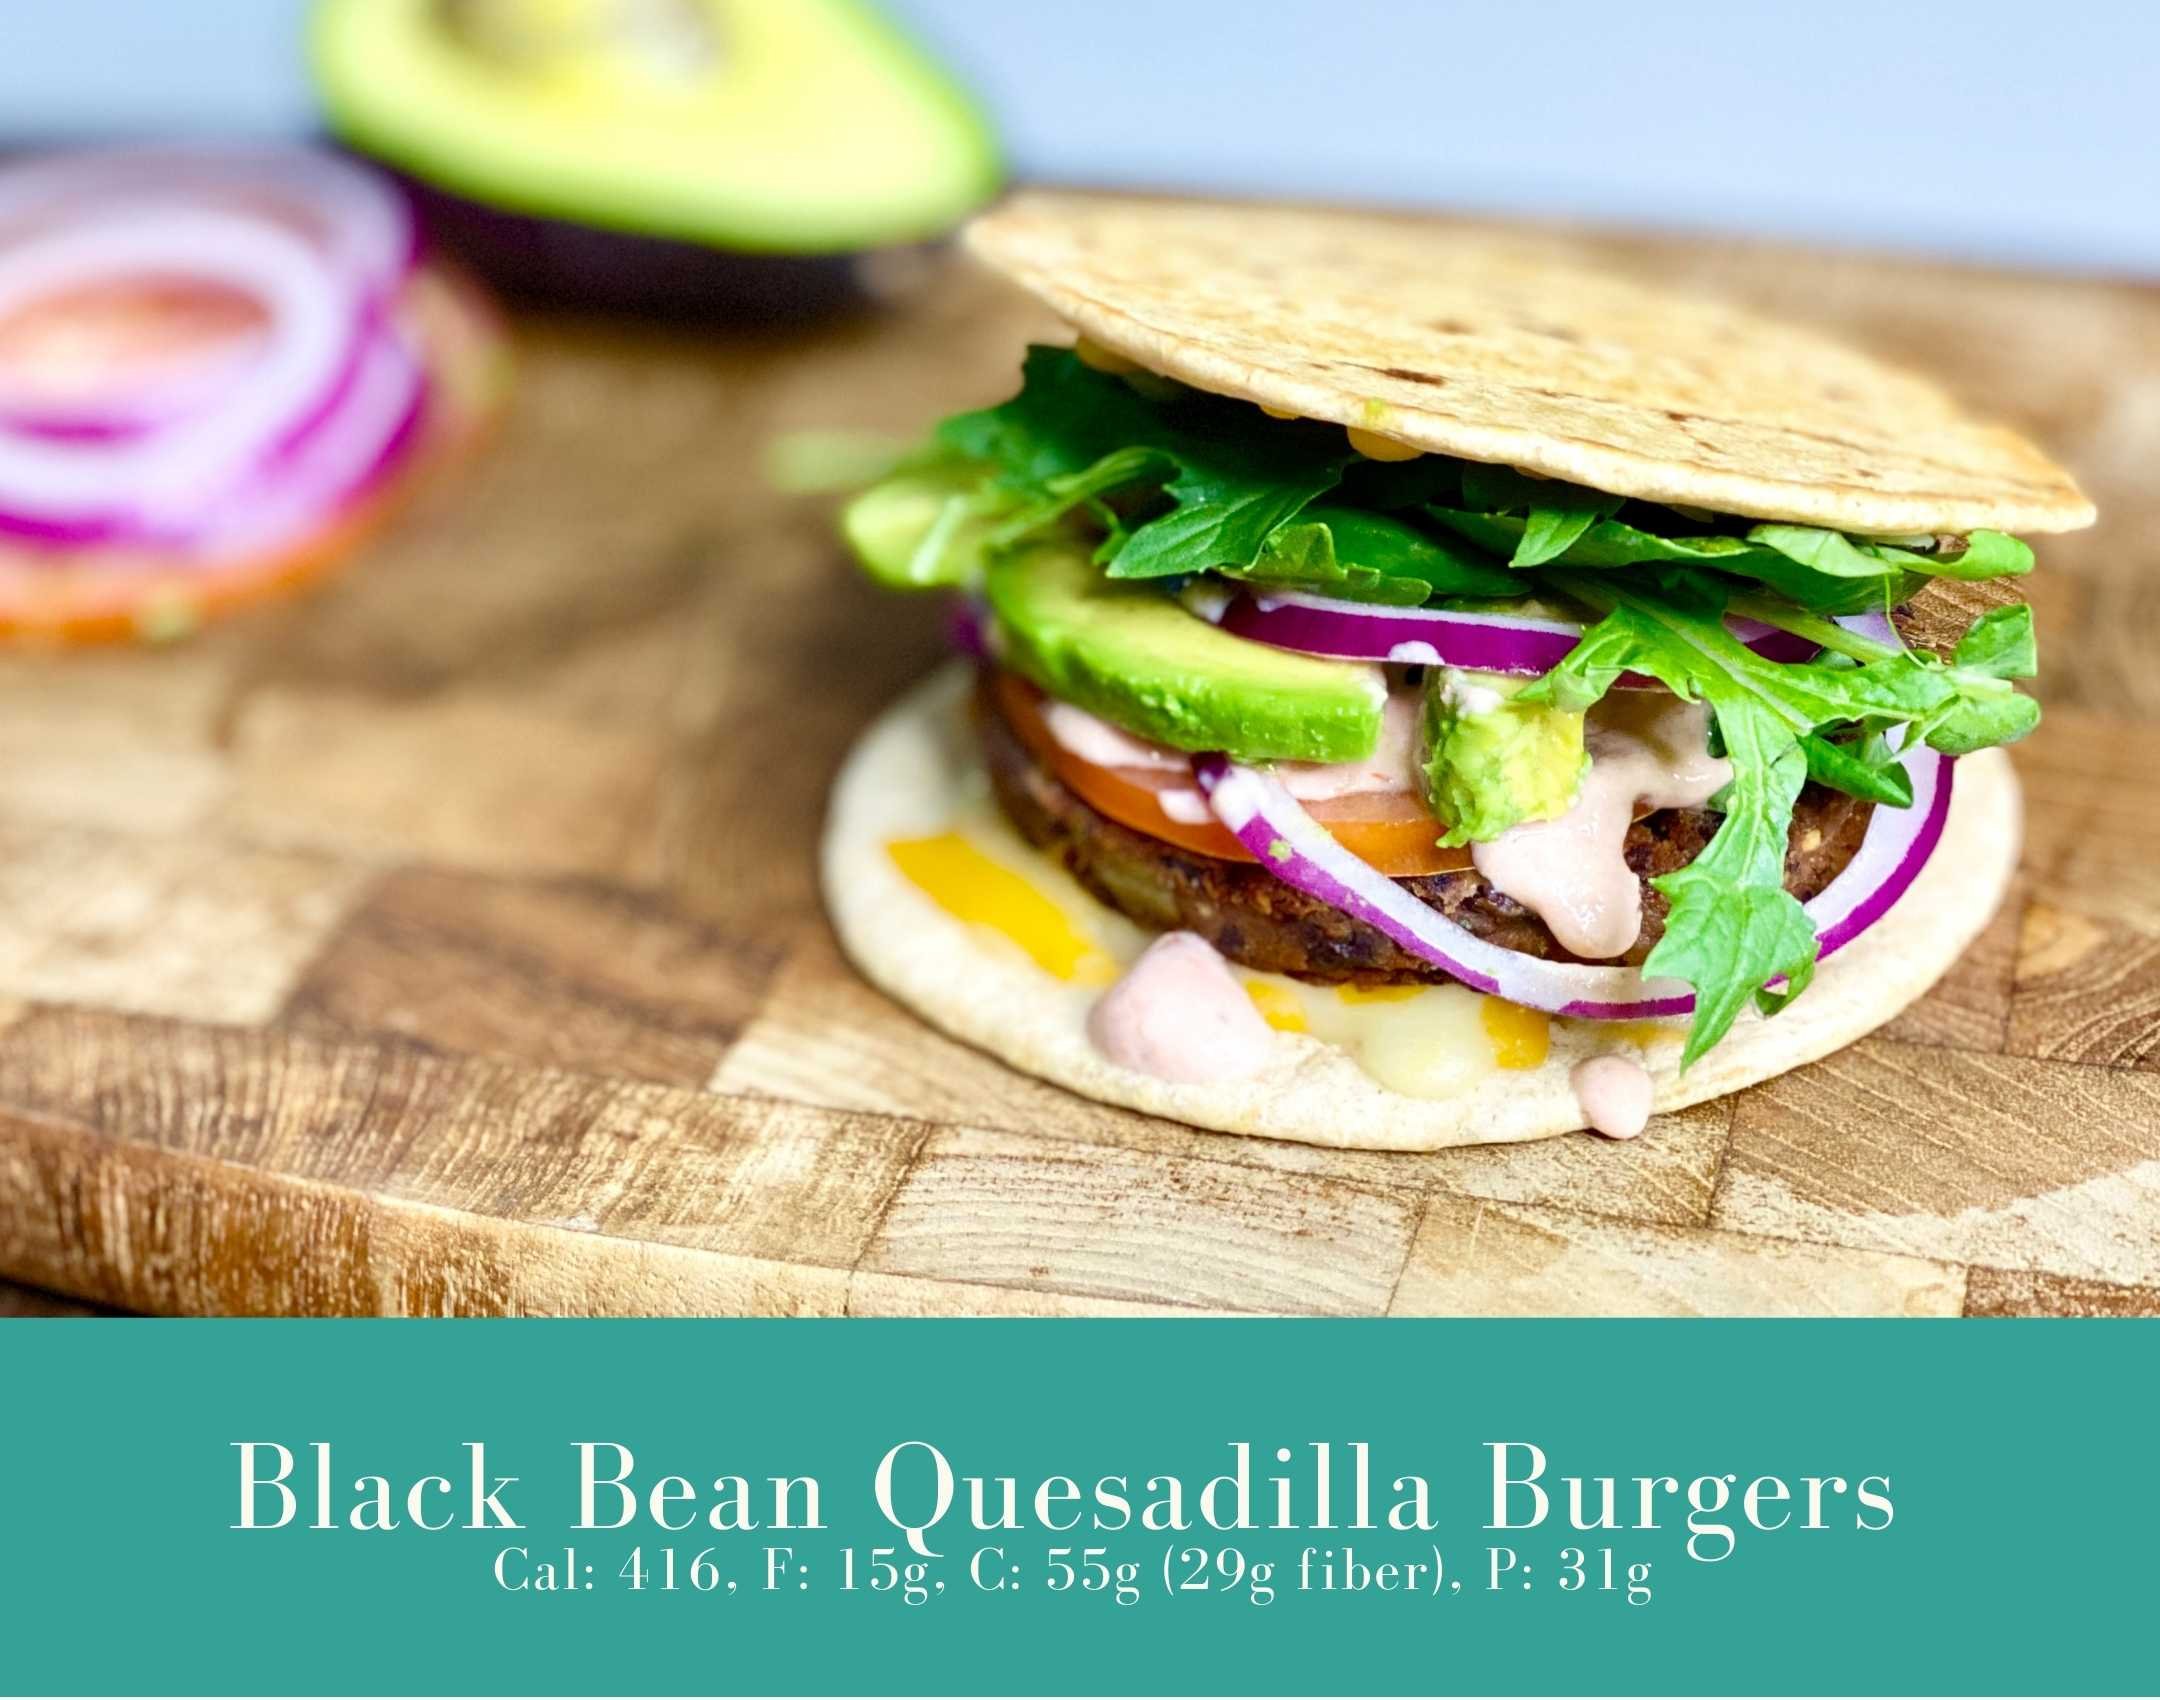 Black Bean Quesadilla Burgers.jpg